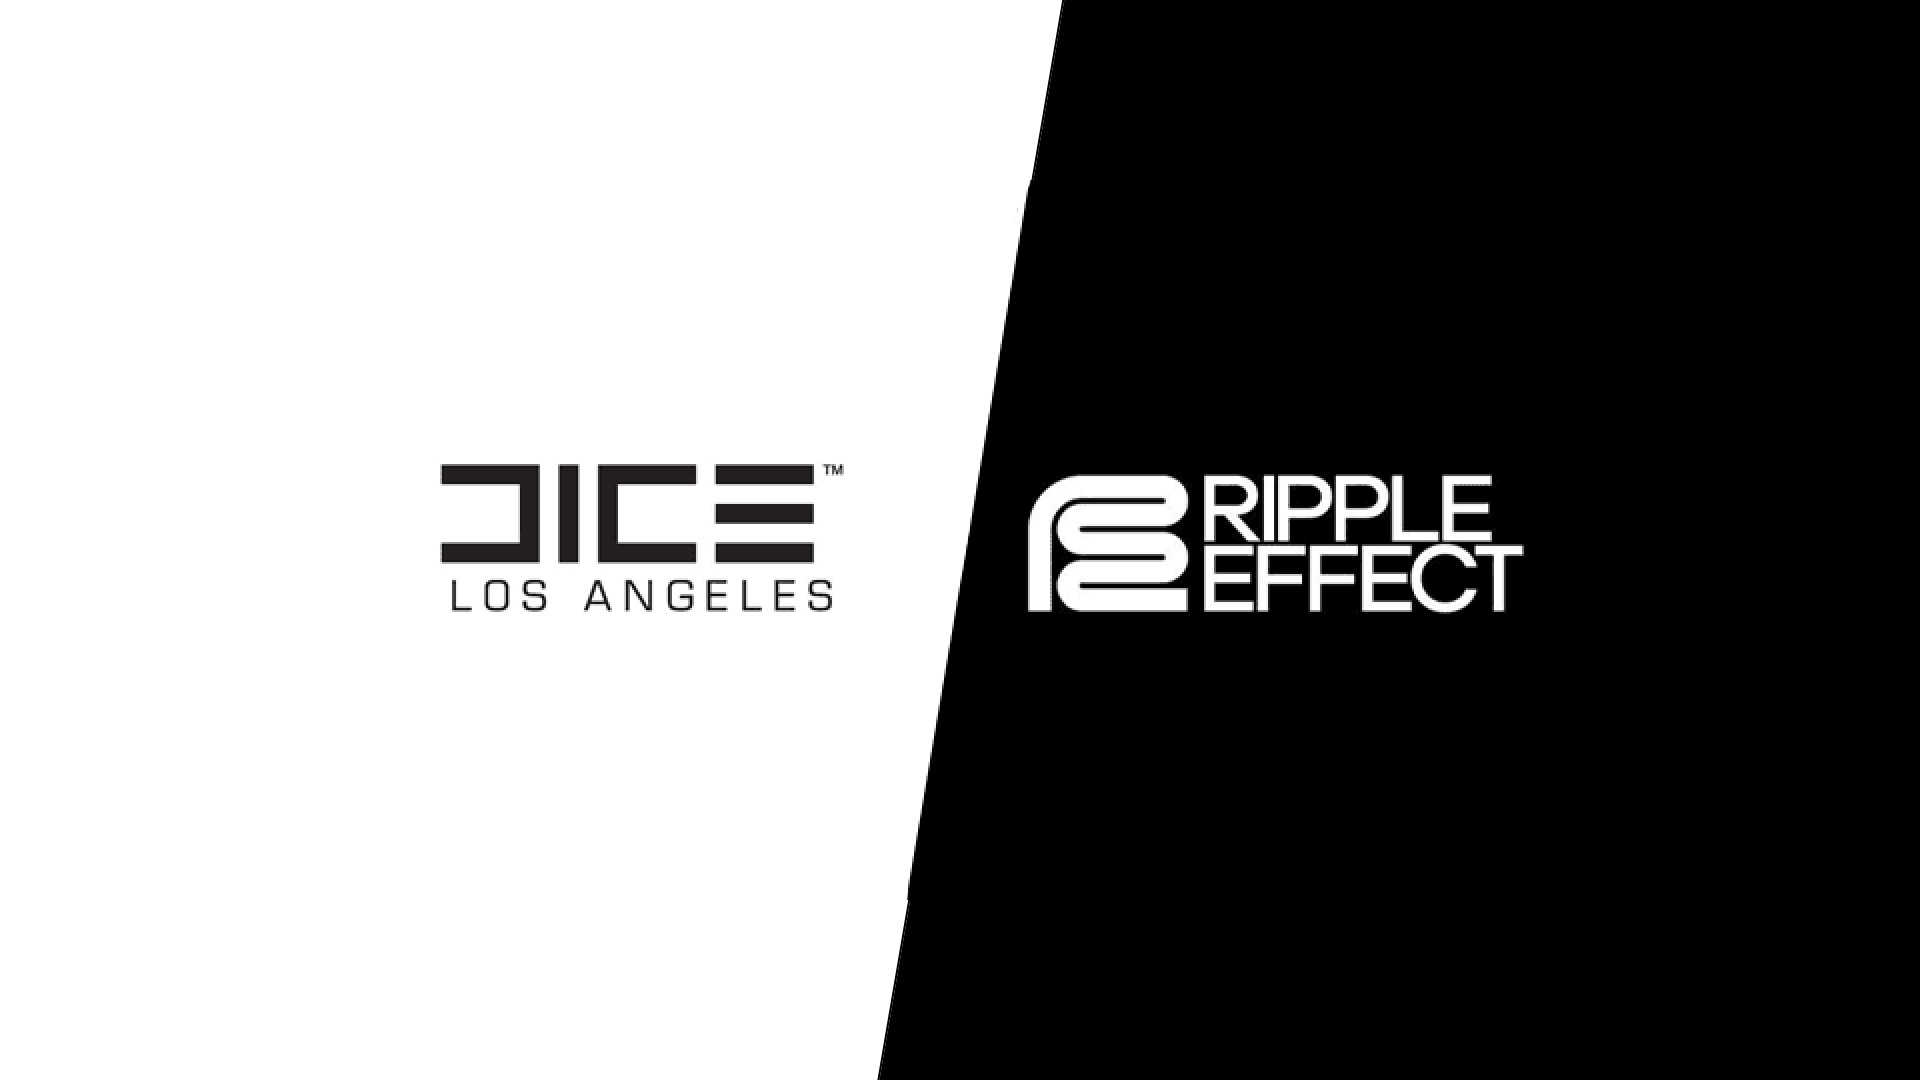 استودیو DICE LA پس از تغییر نام، ساخت پروژه جدیدی را آغاز کرد